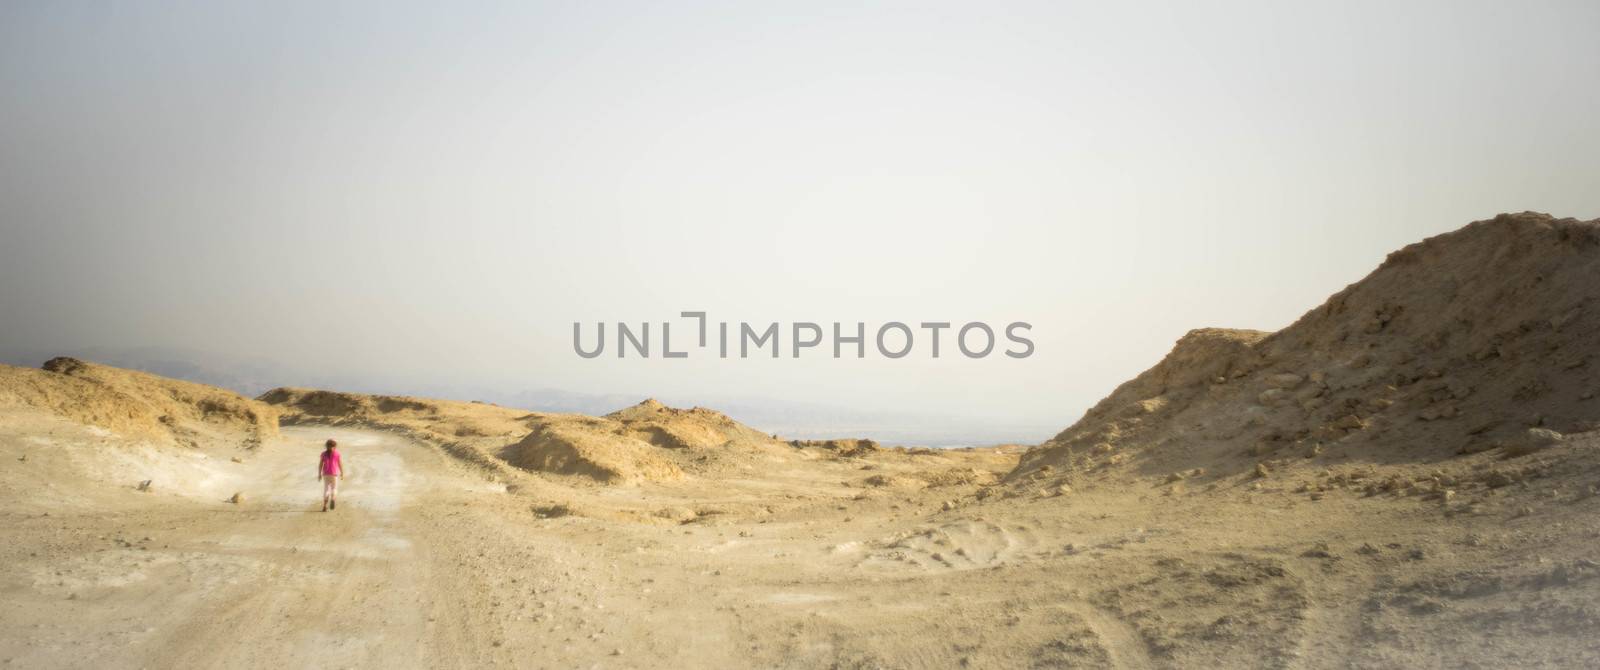 Family hiking in desert by javax